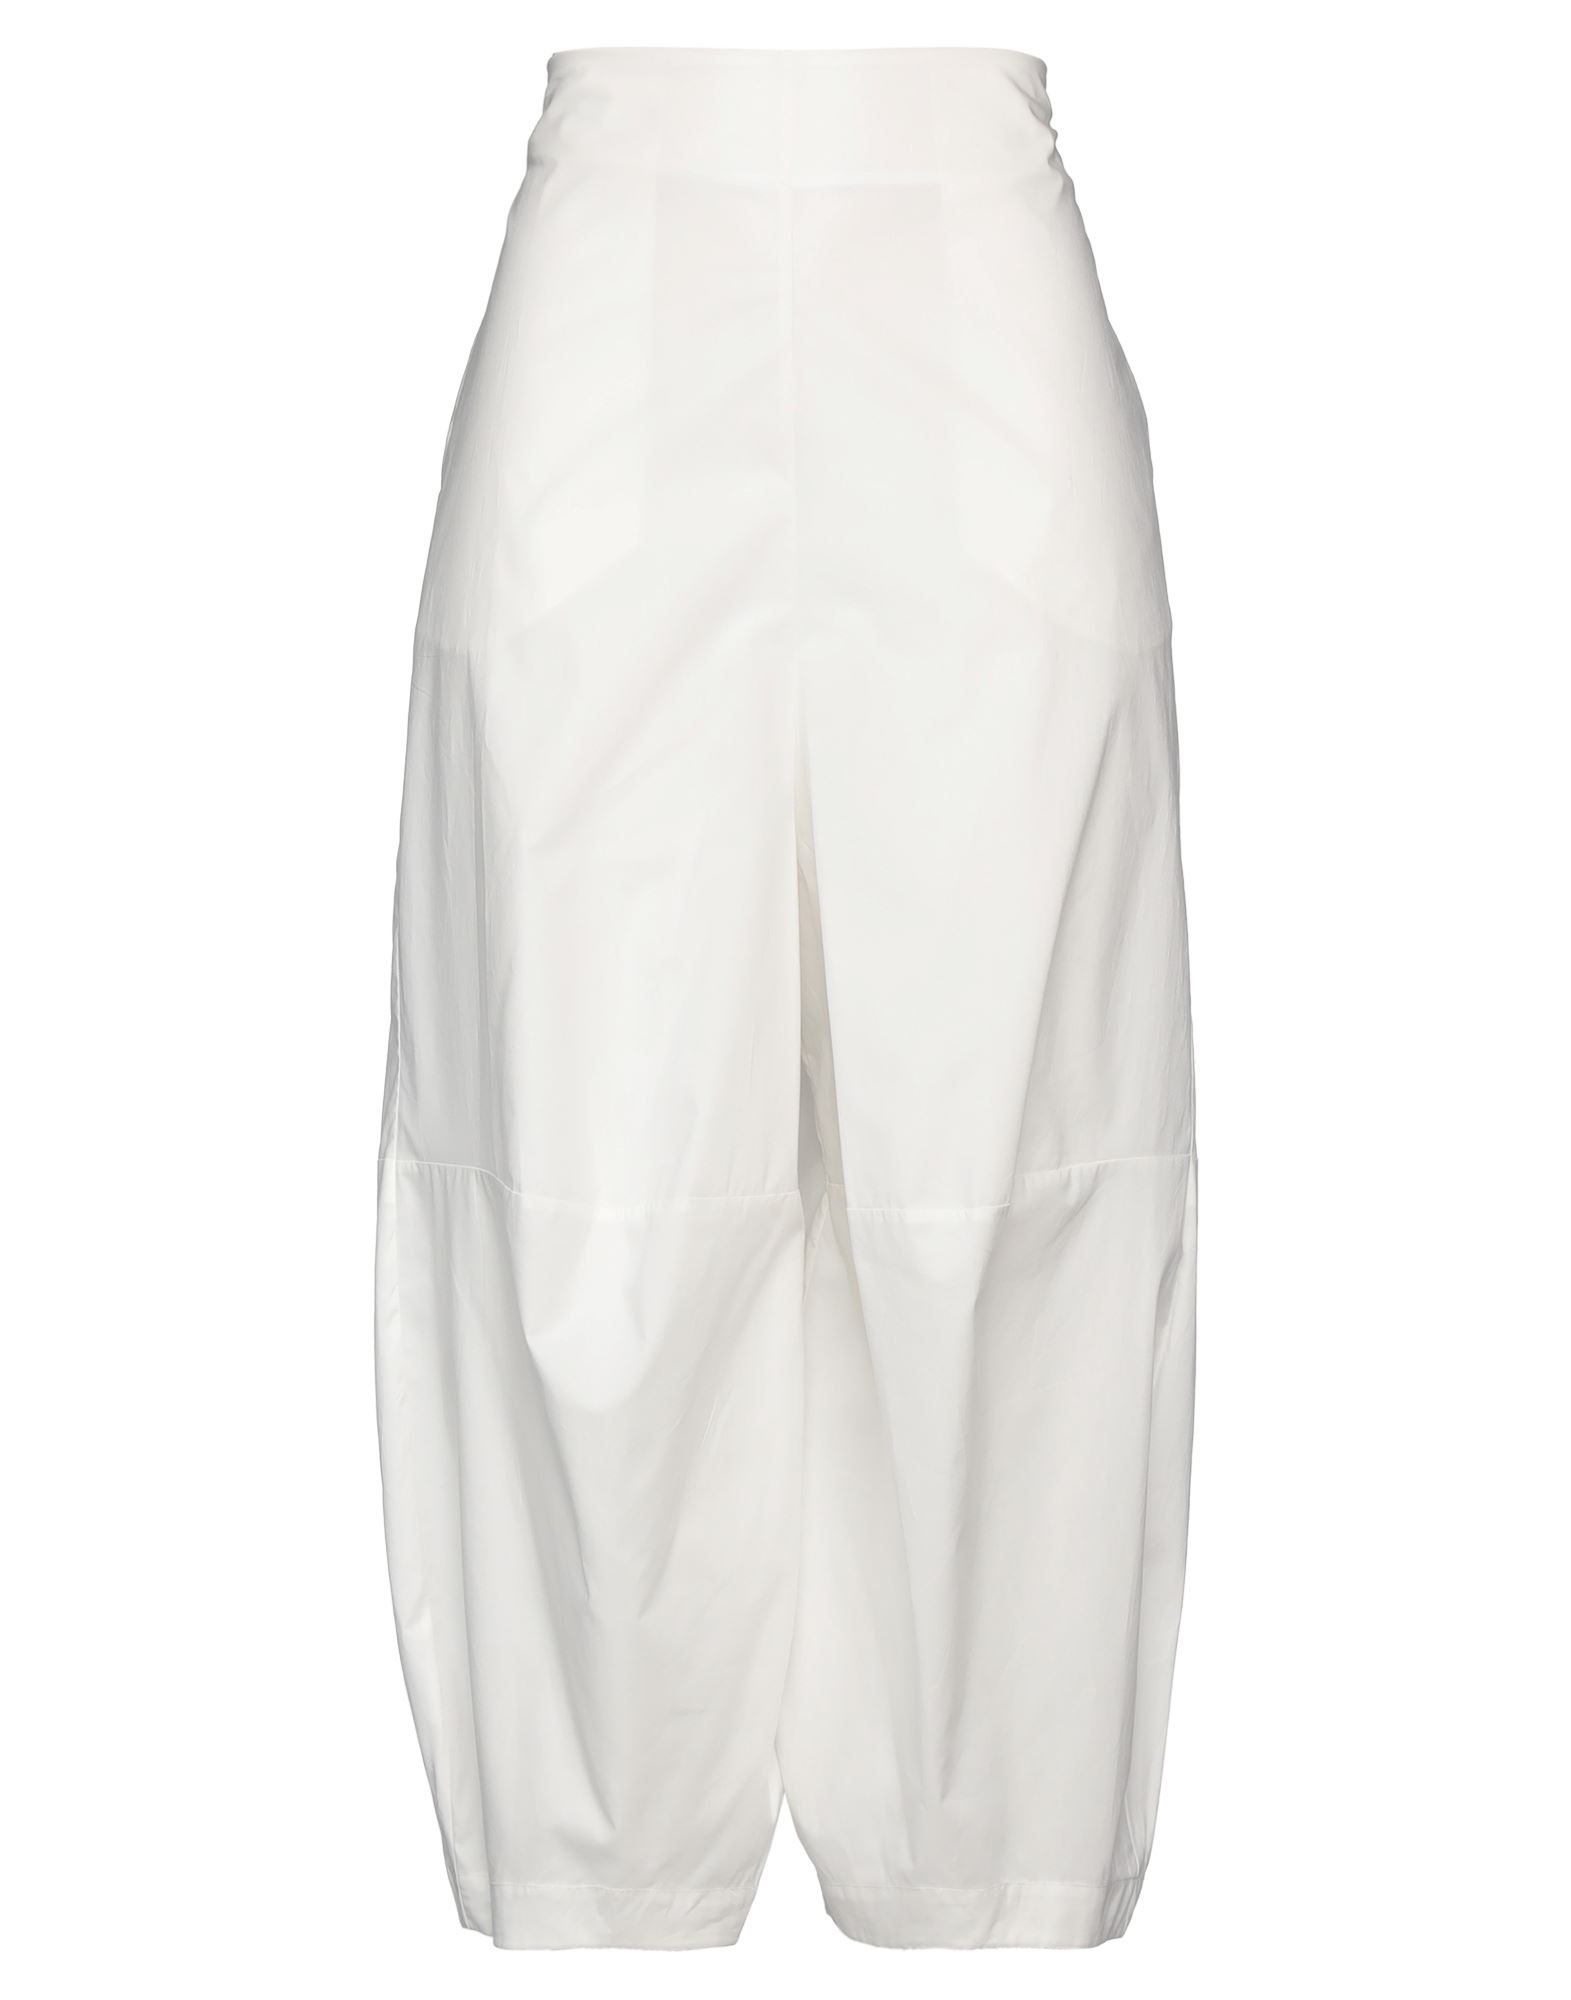 Collection Privèe Collection Privēe? Woman Pants White Size 4 Cotton